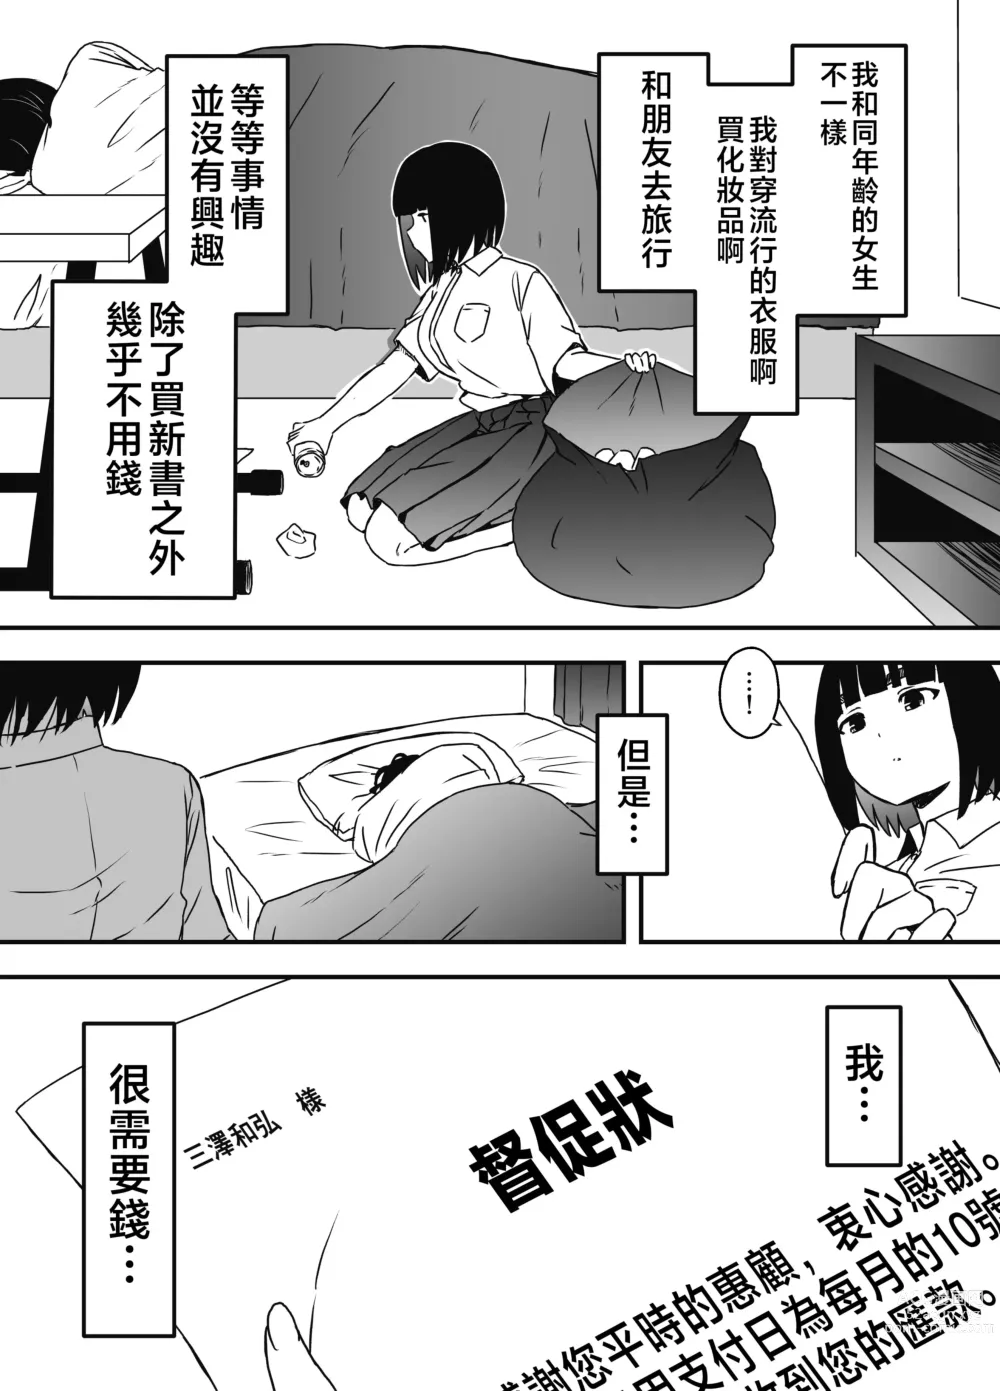 Page 9 of doujinshi Giri no Ane to no 7-kakan Seikatsu - 5